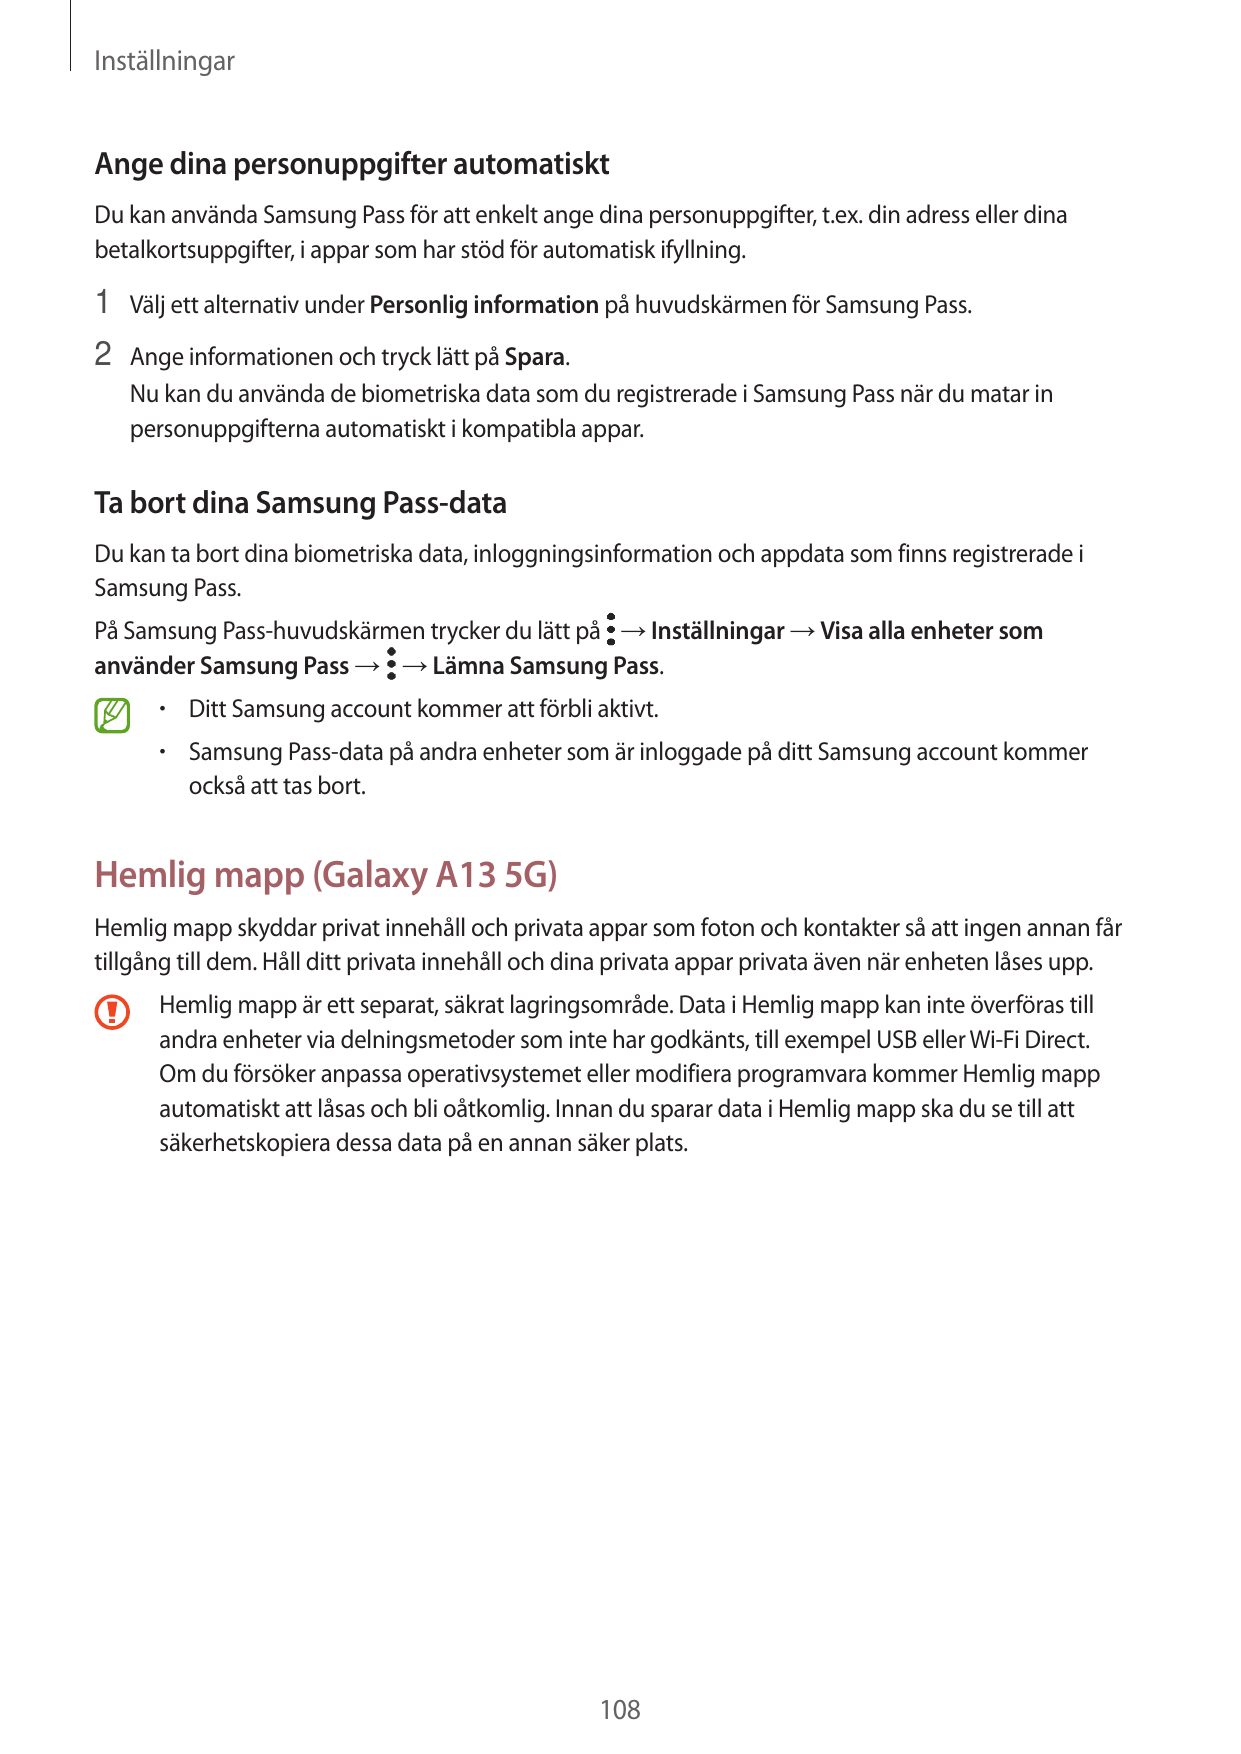 InställningarAnge dina personuppgifter automatisktDu kan använda Samsung Pass för att enkelt ange dina personuppgifter, t.ex. di